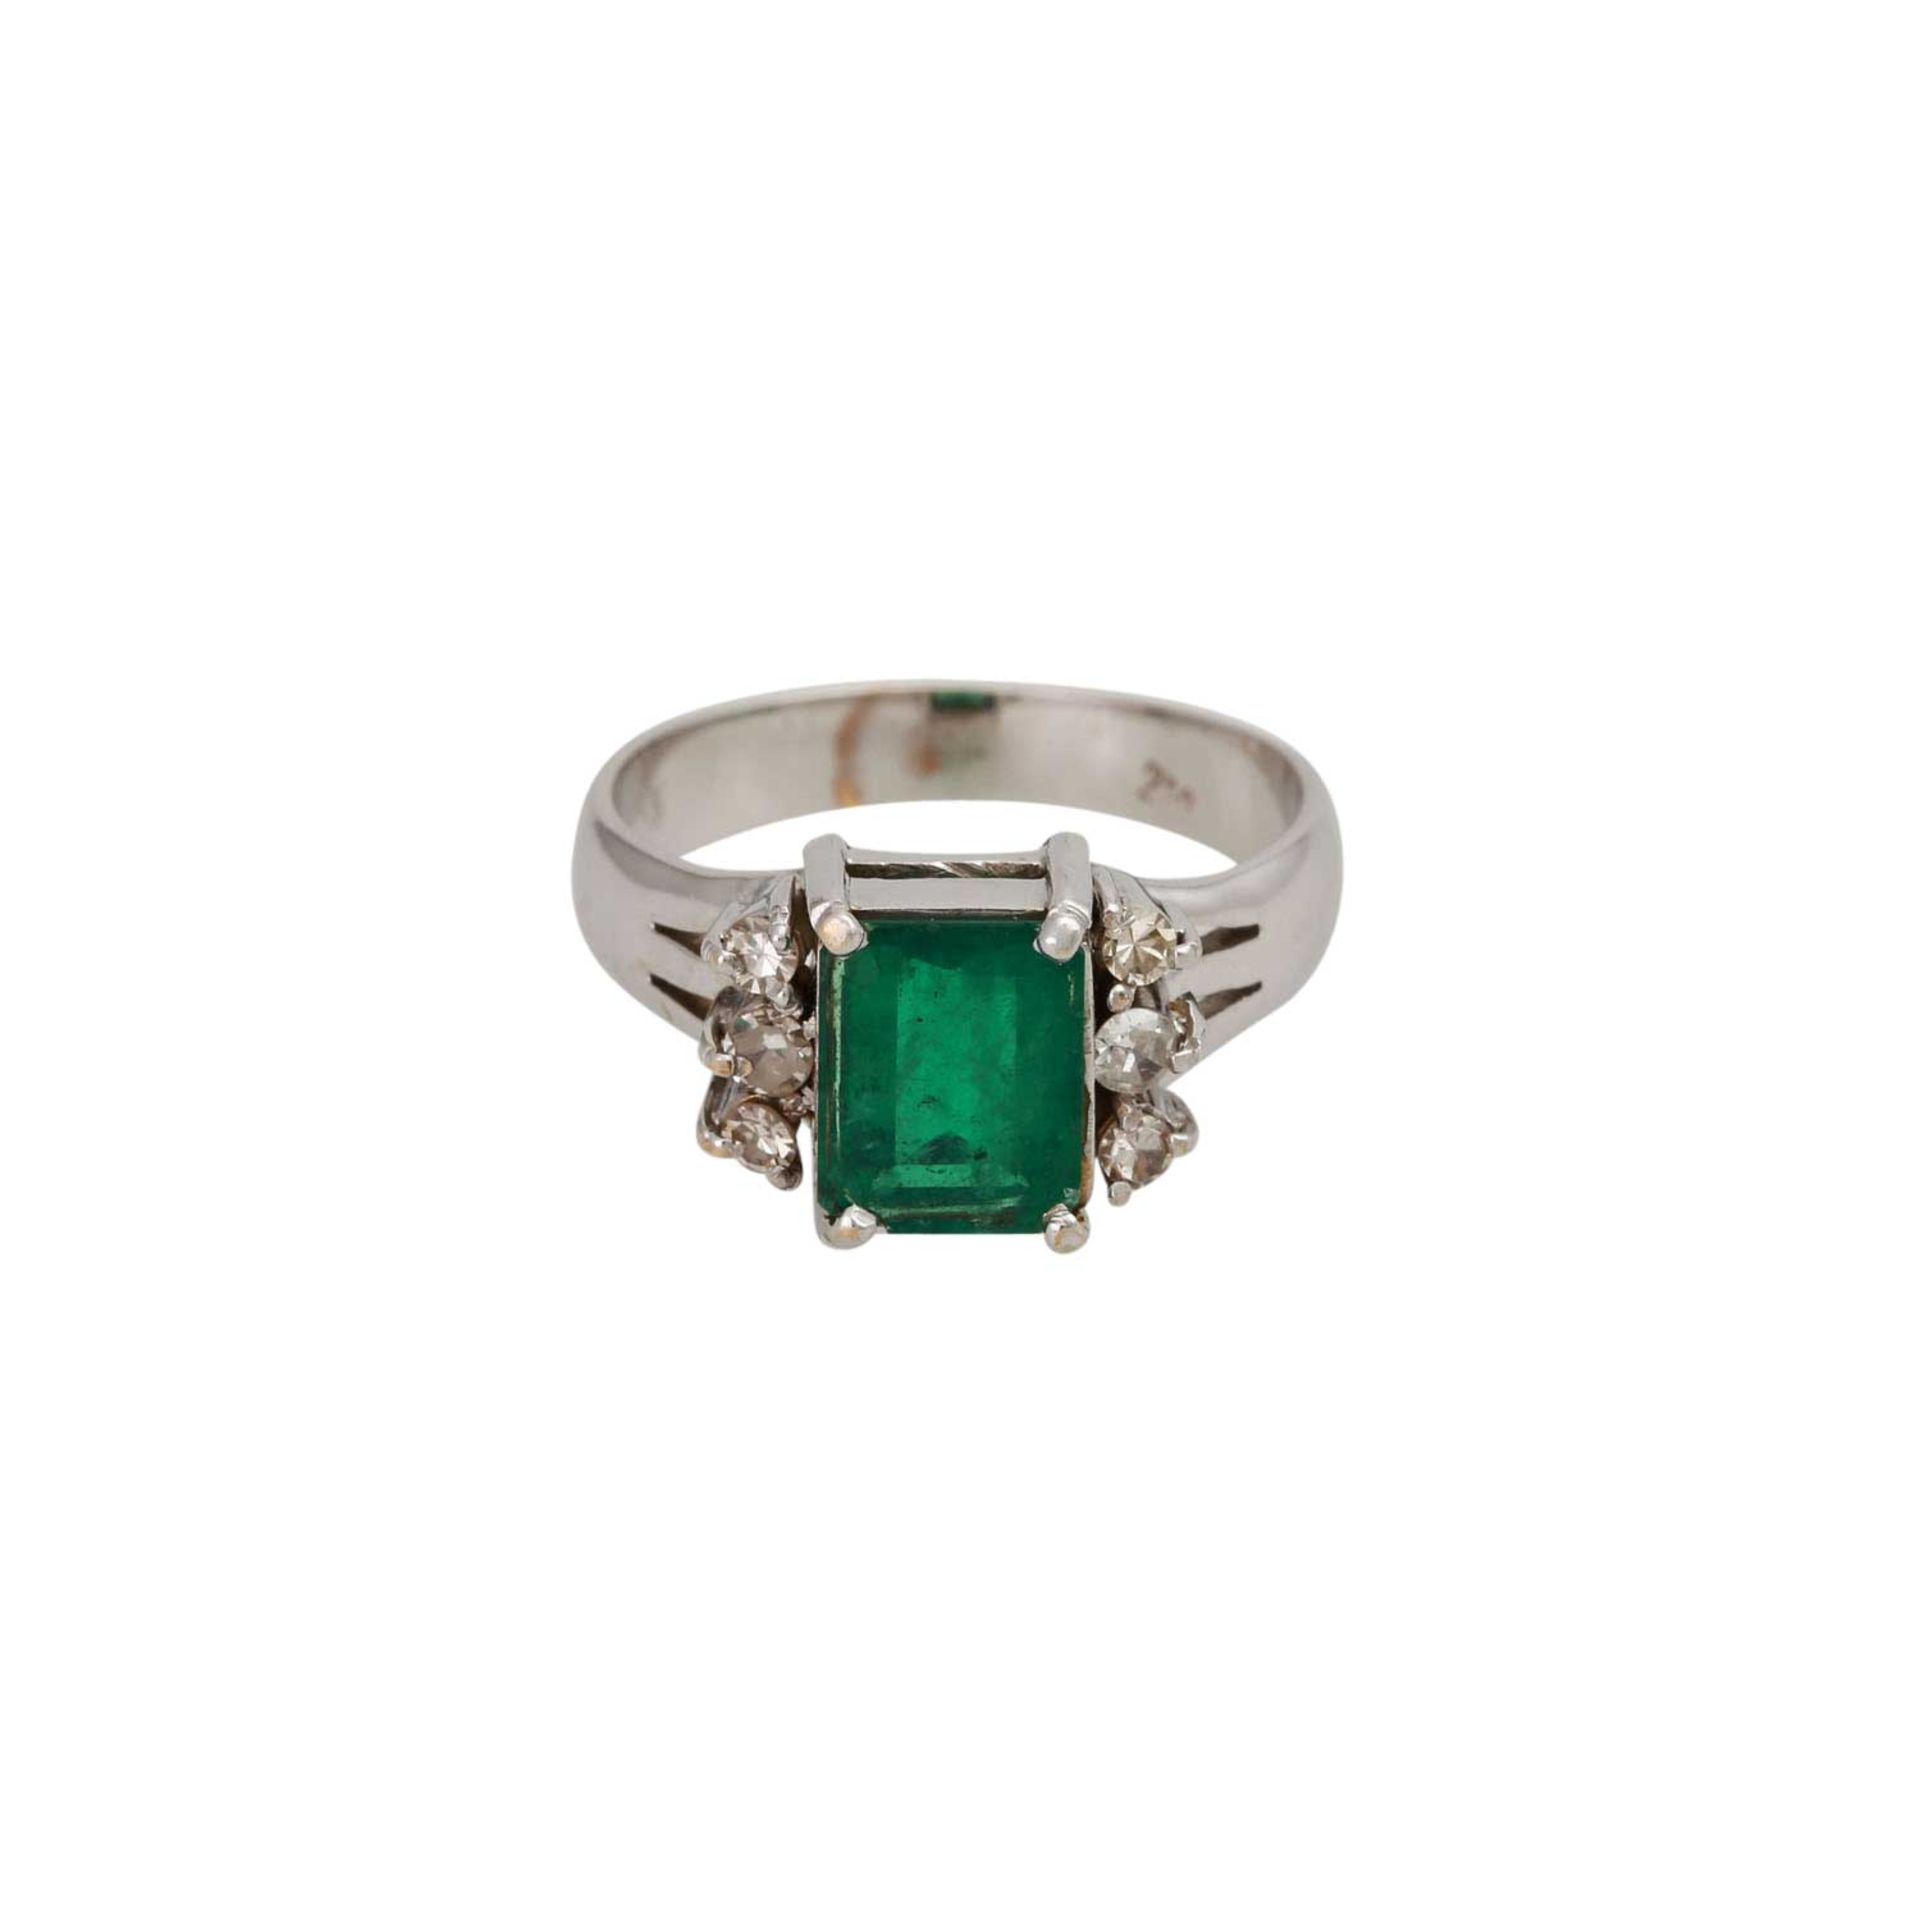 Ring mit Smaragd und Diamantenin WG 18K. RW: ca. 57, Smaragd ca. 9x6,5 mm. 20./21. Jh.